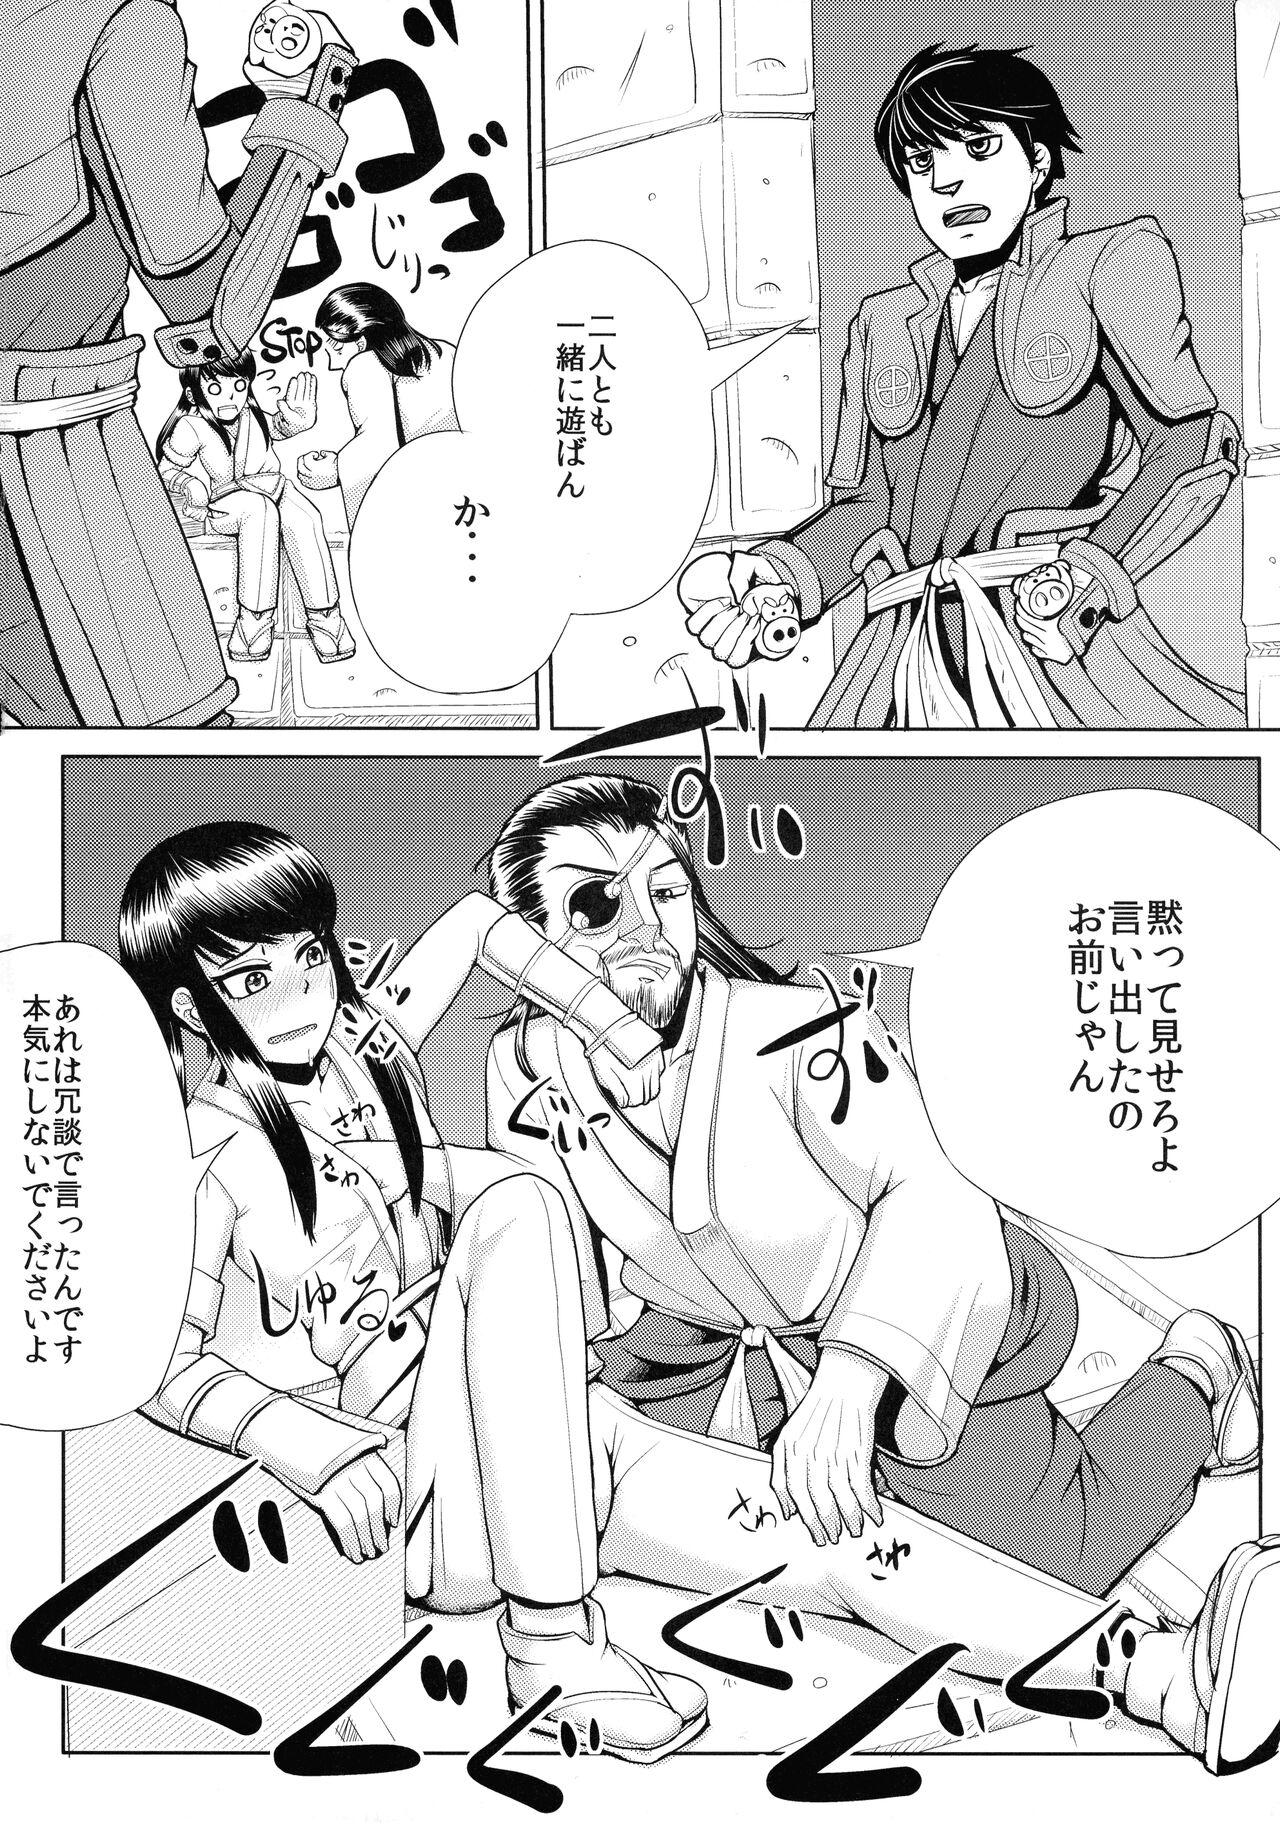 Suckingcock Nagasarerumama Yoicchi to Oppai-nu ga Toyotoyo to Nobunobu ni Yararechau Hon - Drifters Booty - Page 4